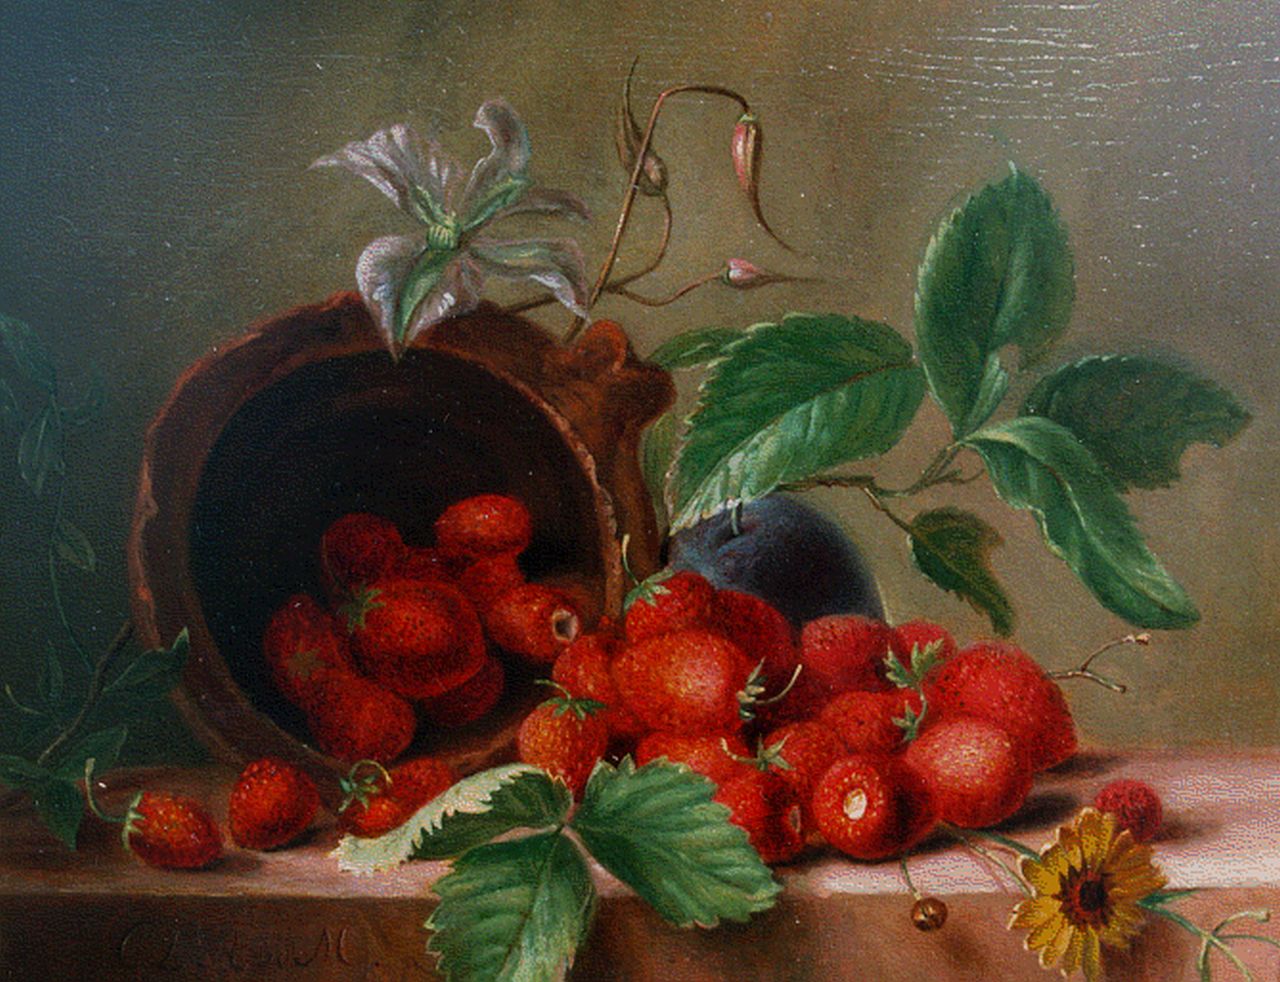 Onbekend   | Onbekend, Stilleven met aardbeien, olieverf op paneel 18,0 x 22,5 cm, gedateerd 1839